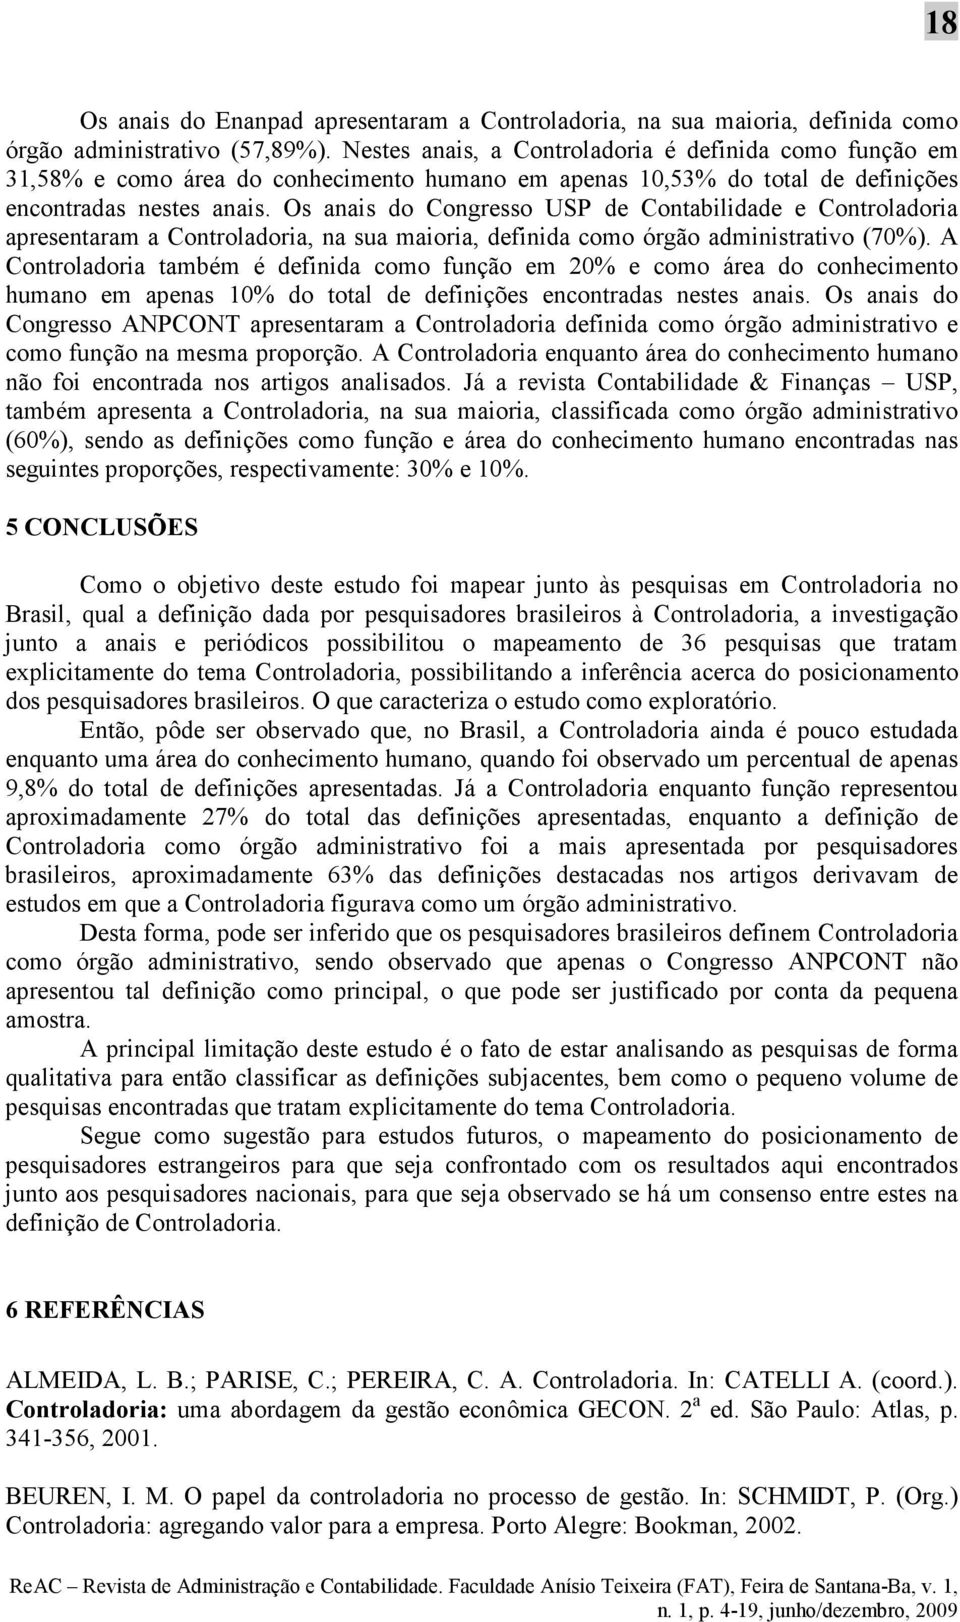 Os anais do Congresso USP de Contabilidade e Controladoria apresentaram a Controladoria, na sua maioria, definida como órgão administrativo (70%).